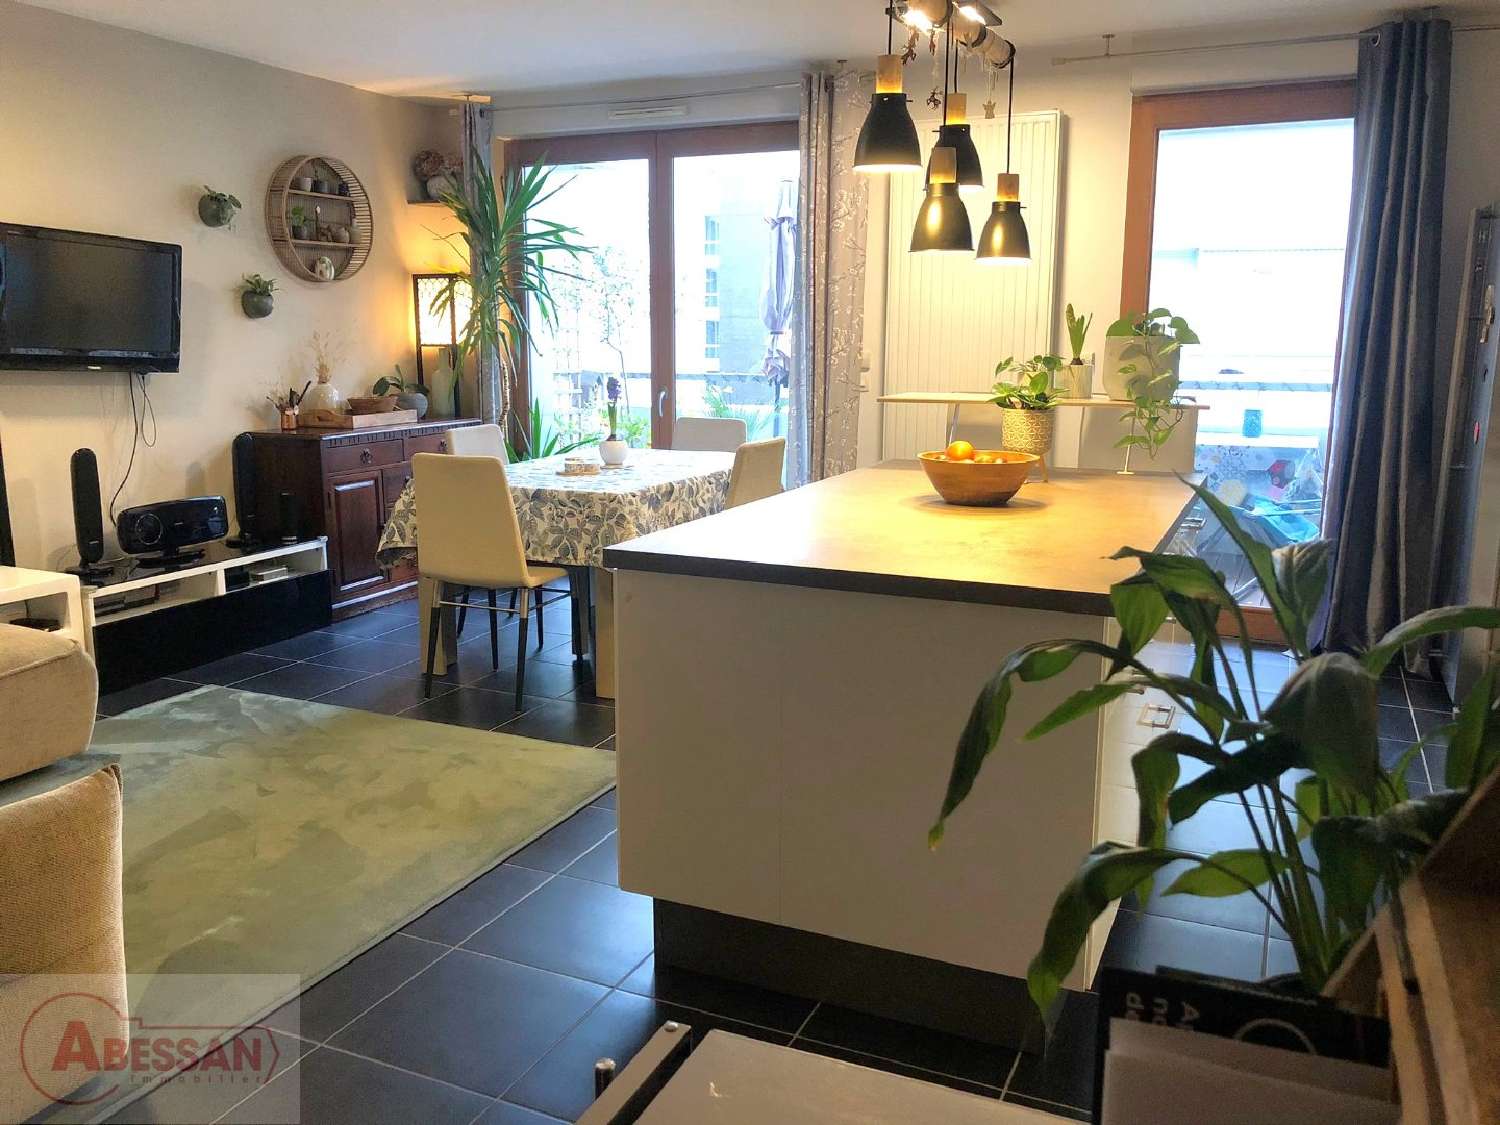  à vendre appartement Lyon 7e Arrondissement Rhône 1